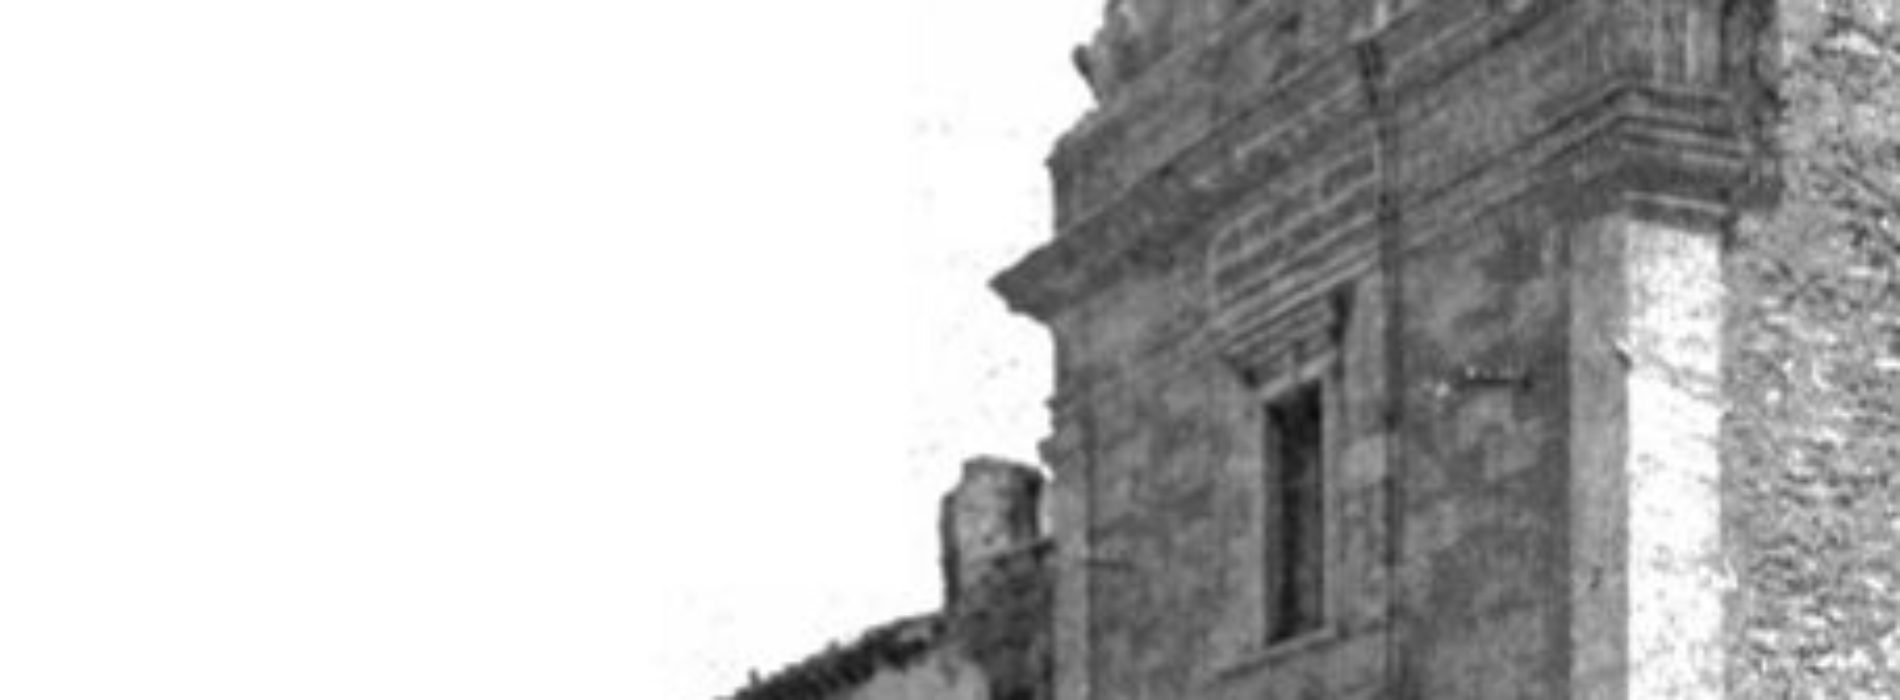 Marzo 1912- “Catina a viddana” e la sommossa popolare che coinvolse Barrafranca